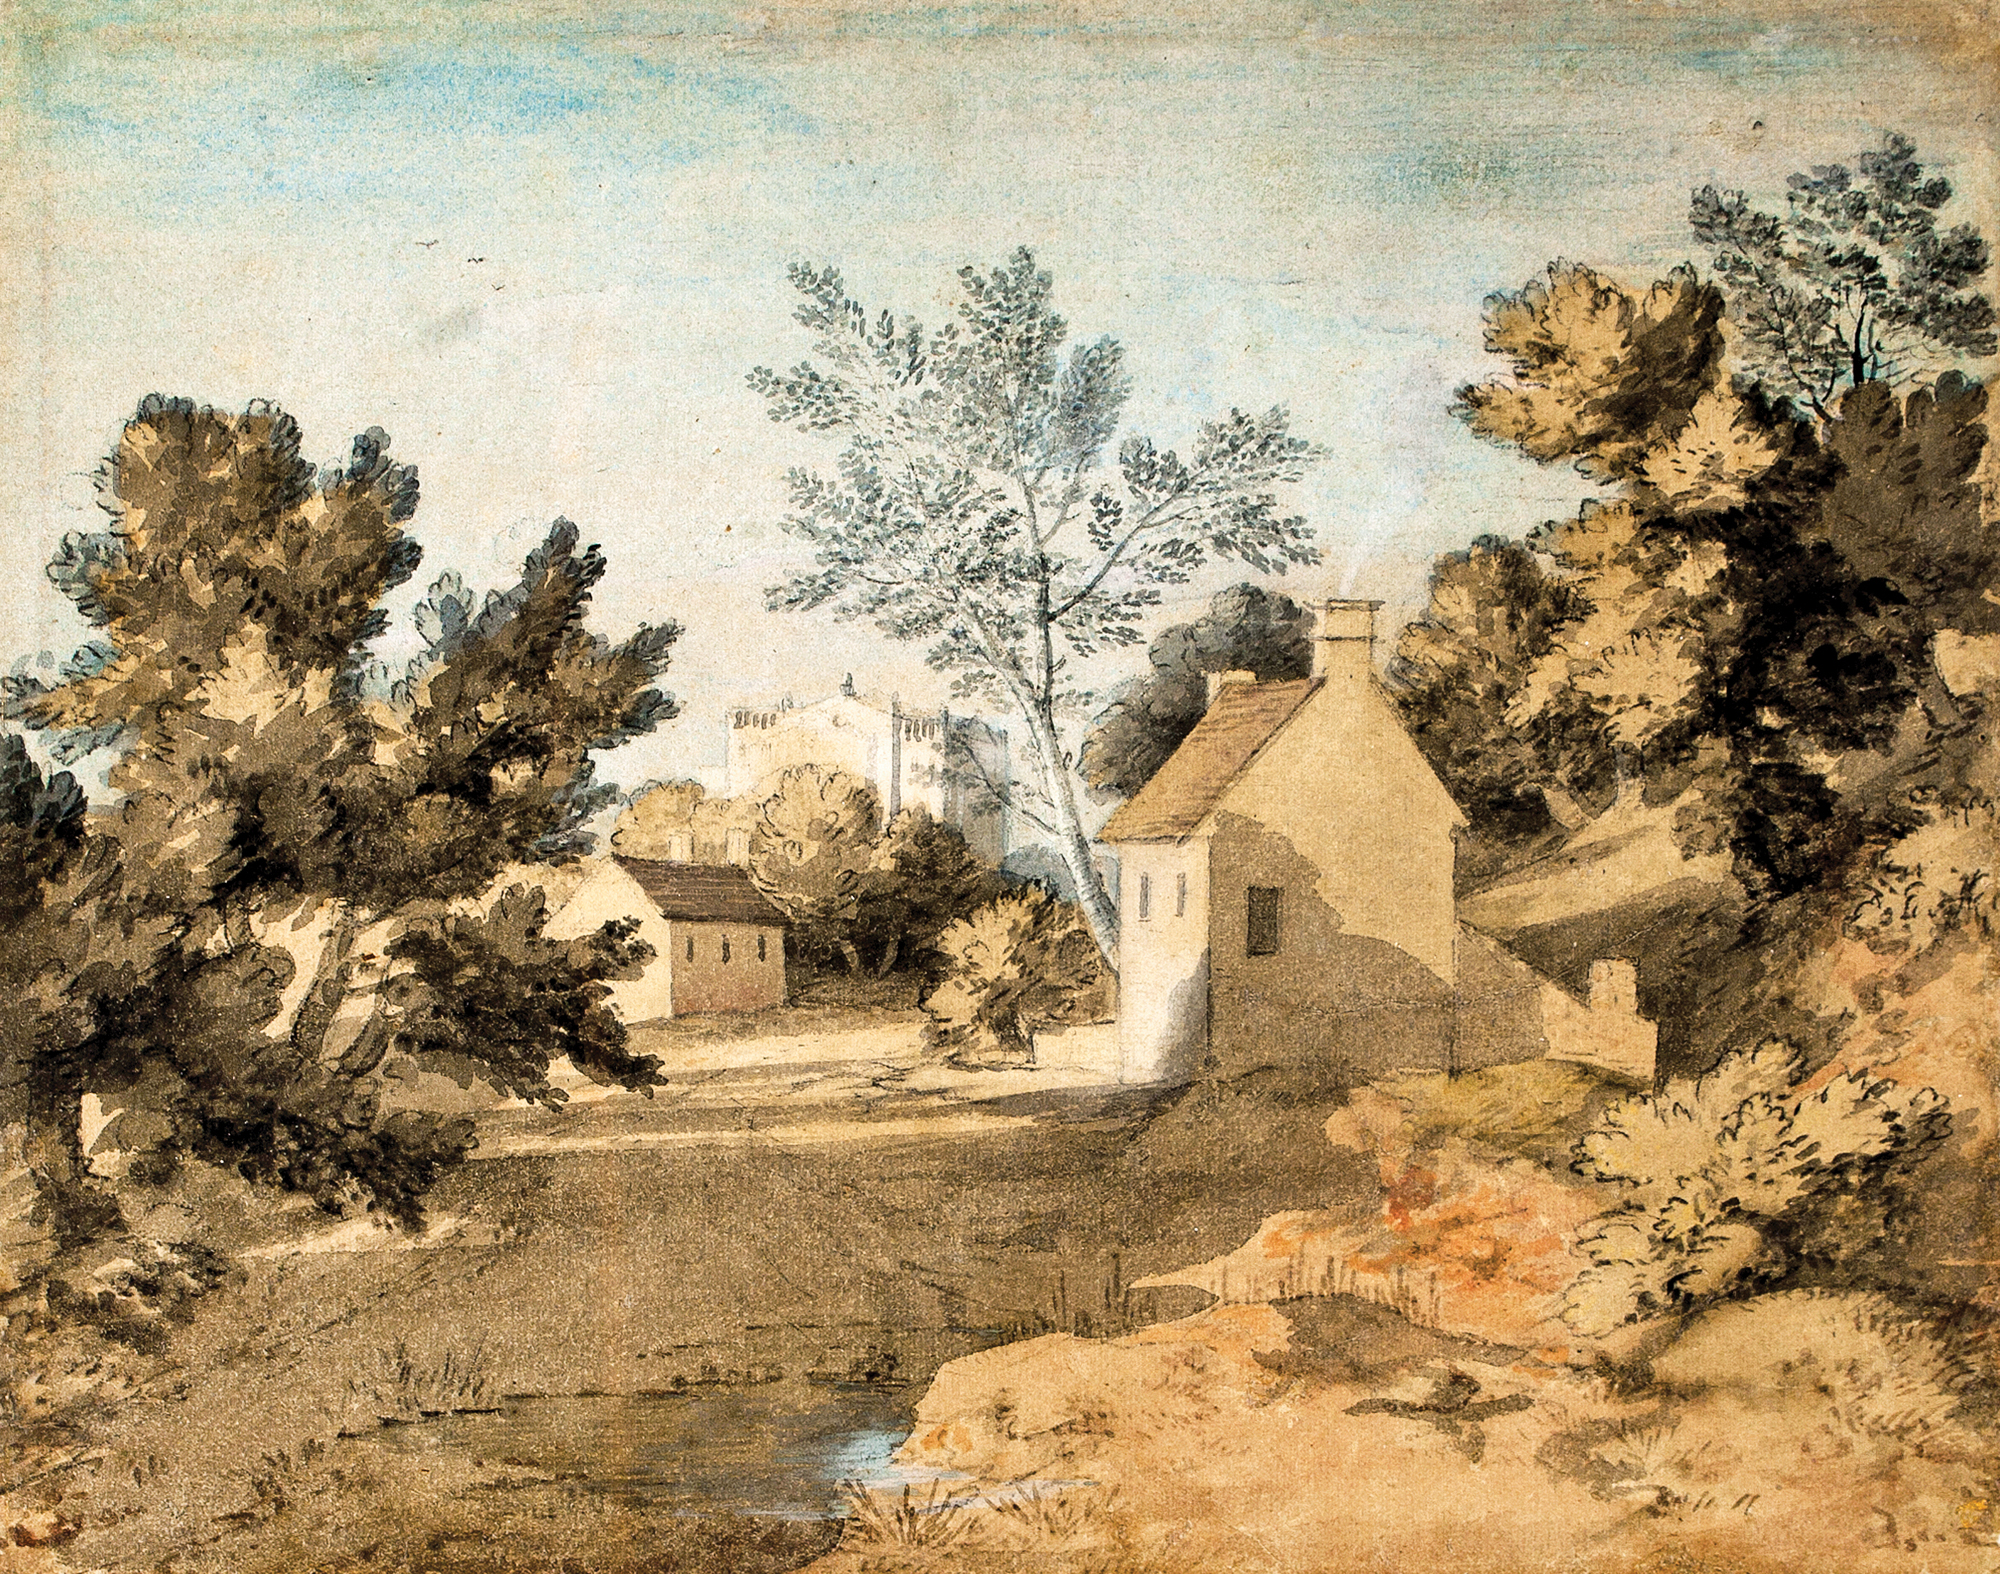 Thomas Gainsborough. Vista de la entrada de un pueblo con árboles, c. 1763. Salida: 10.000 euros. Remate: 15.000 euros